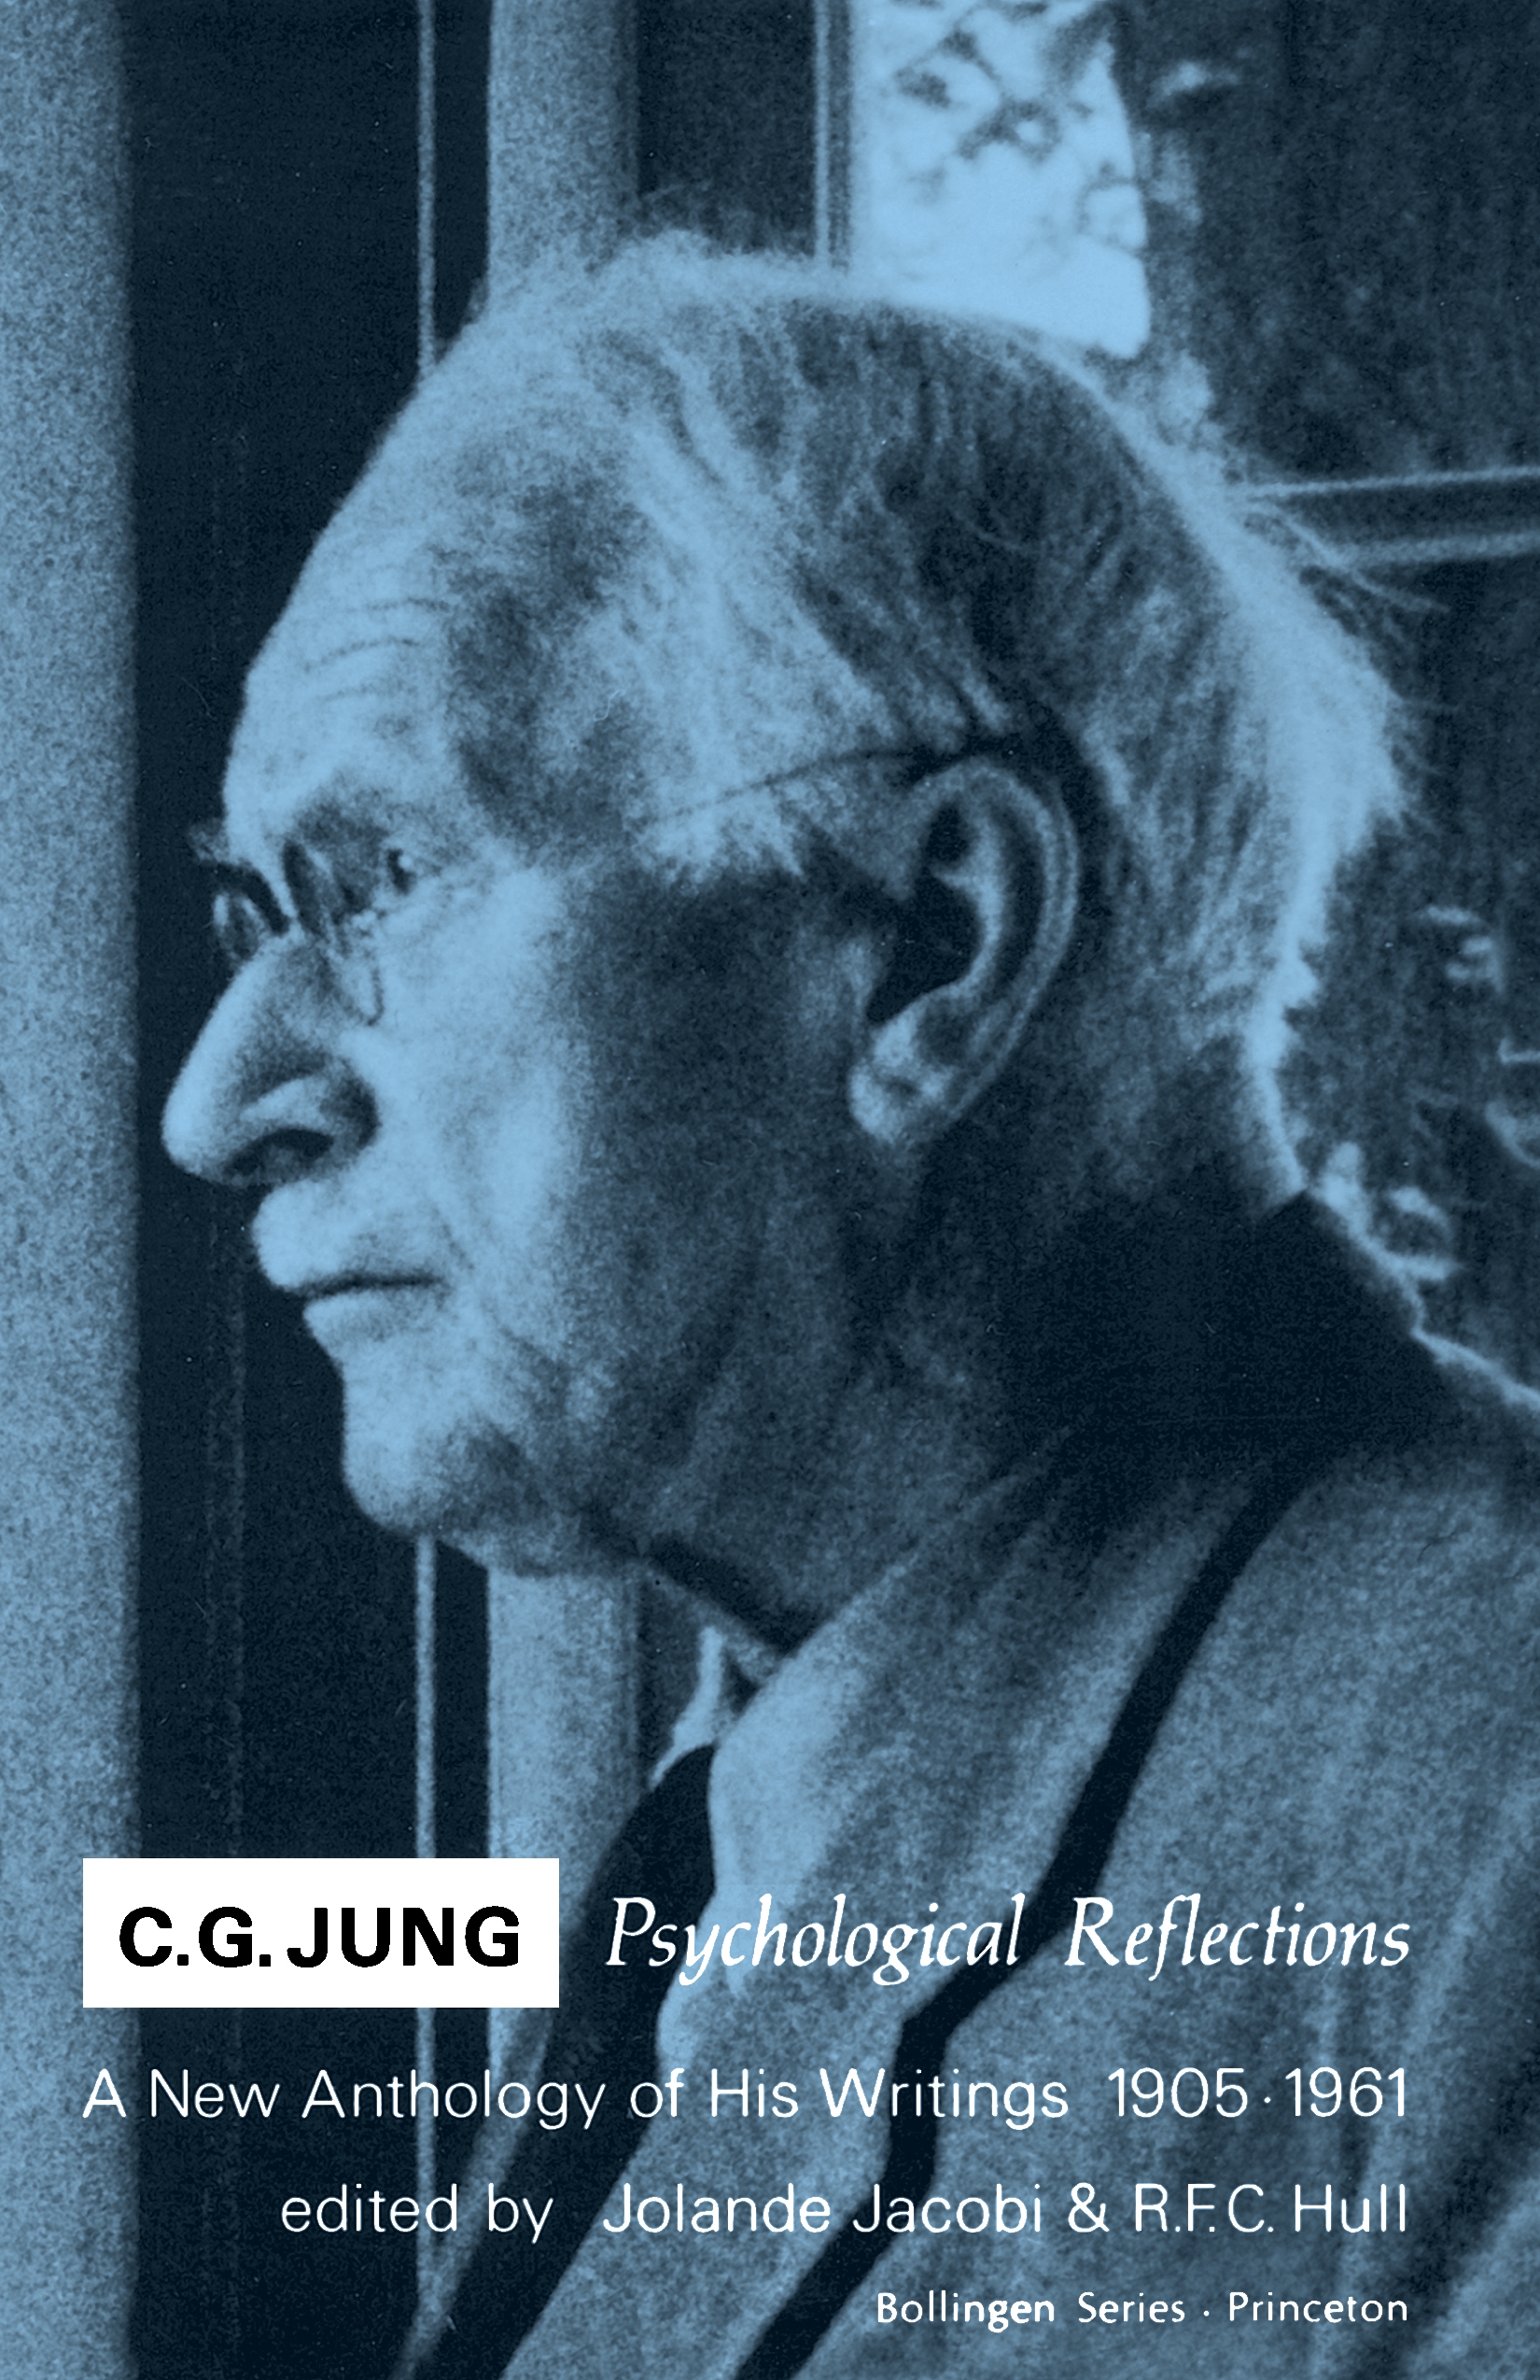 About Carl Jung - CG Jung Center